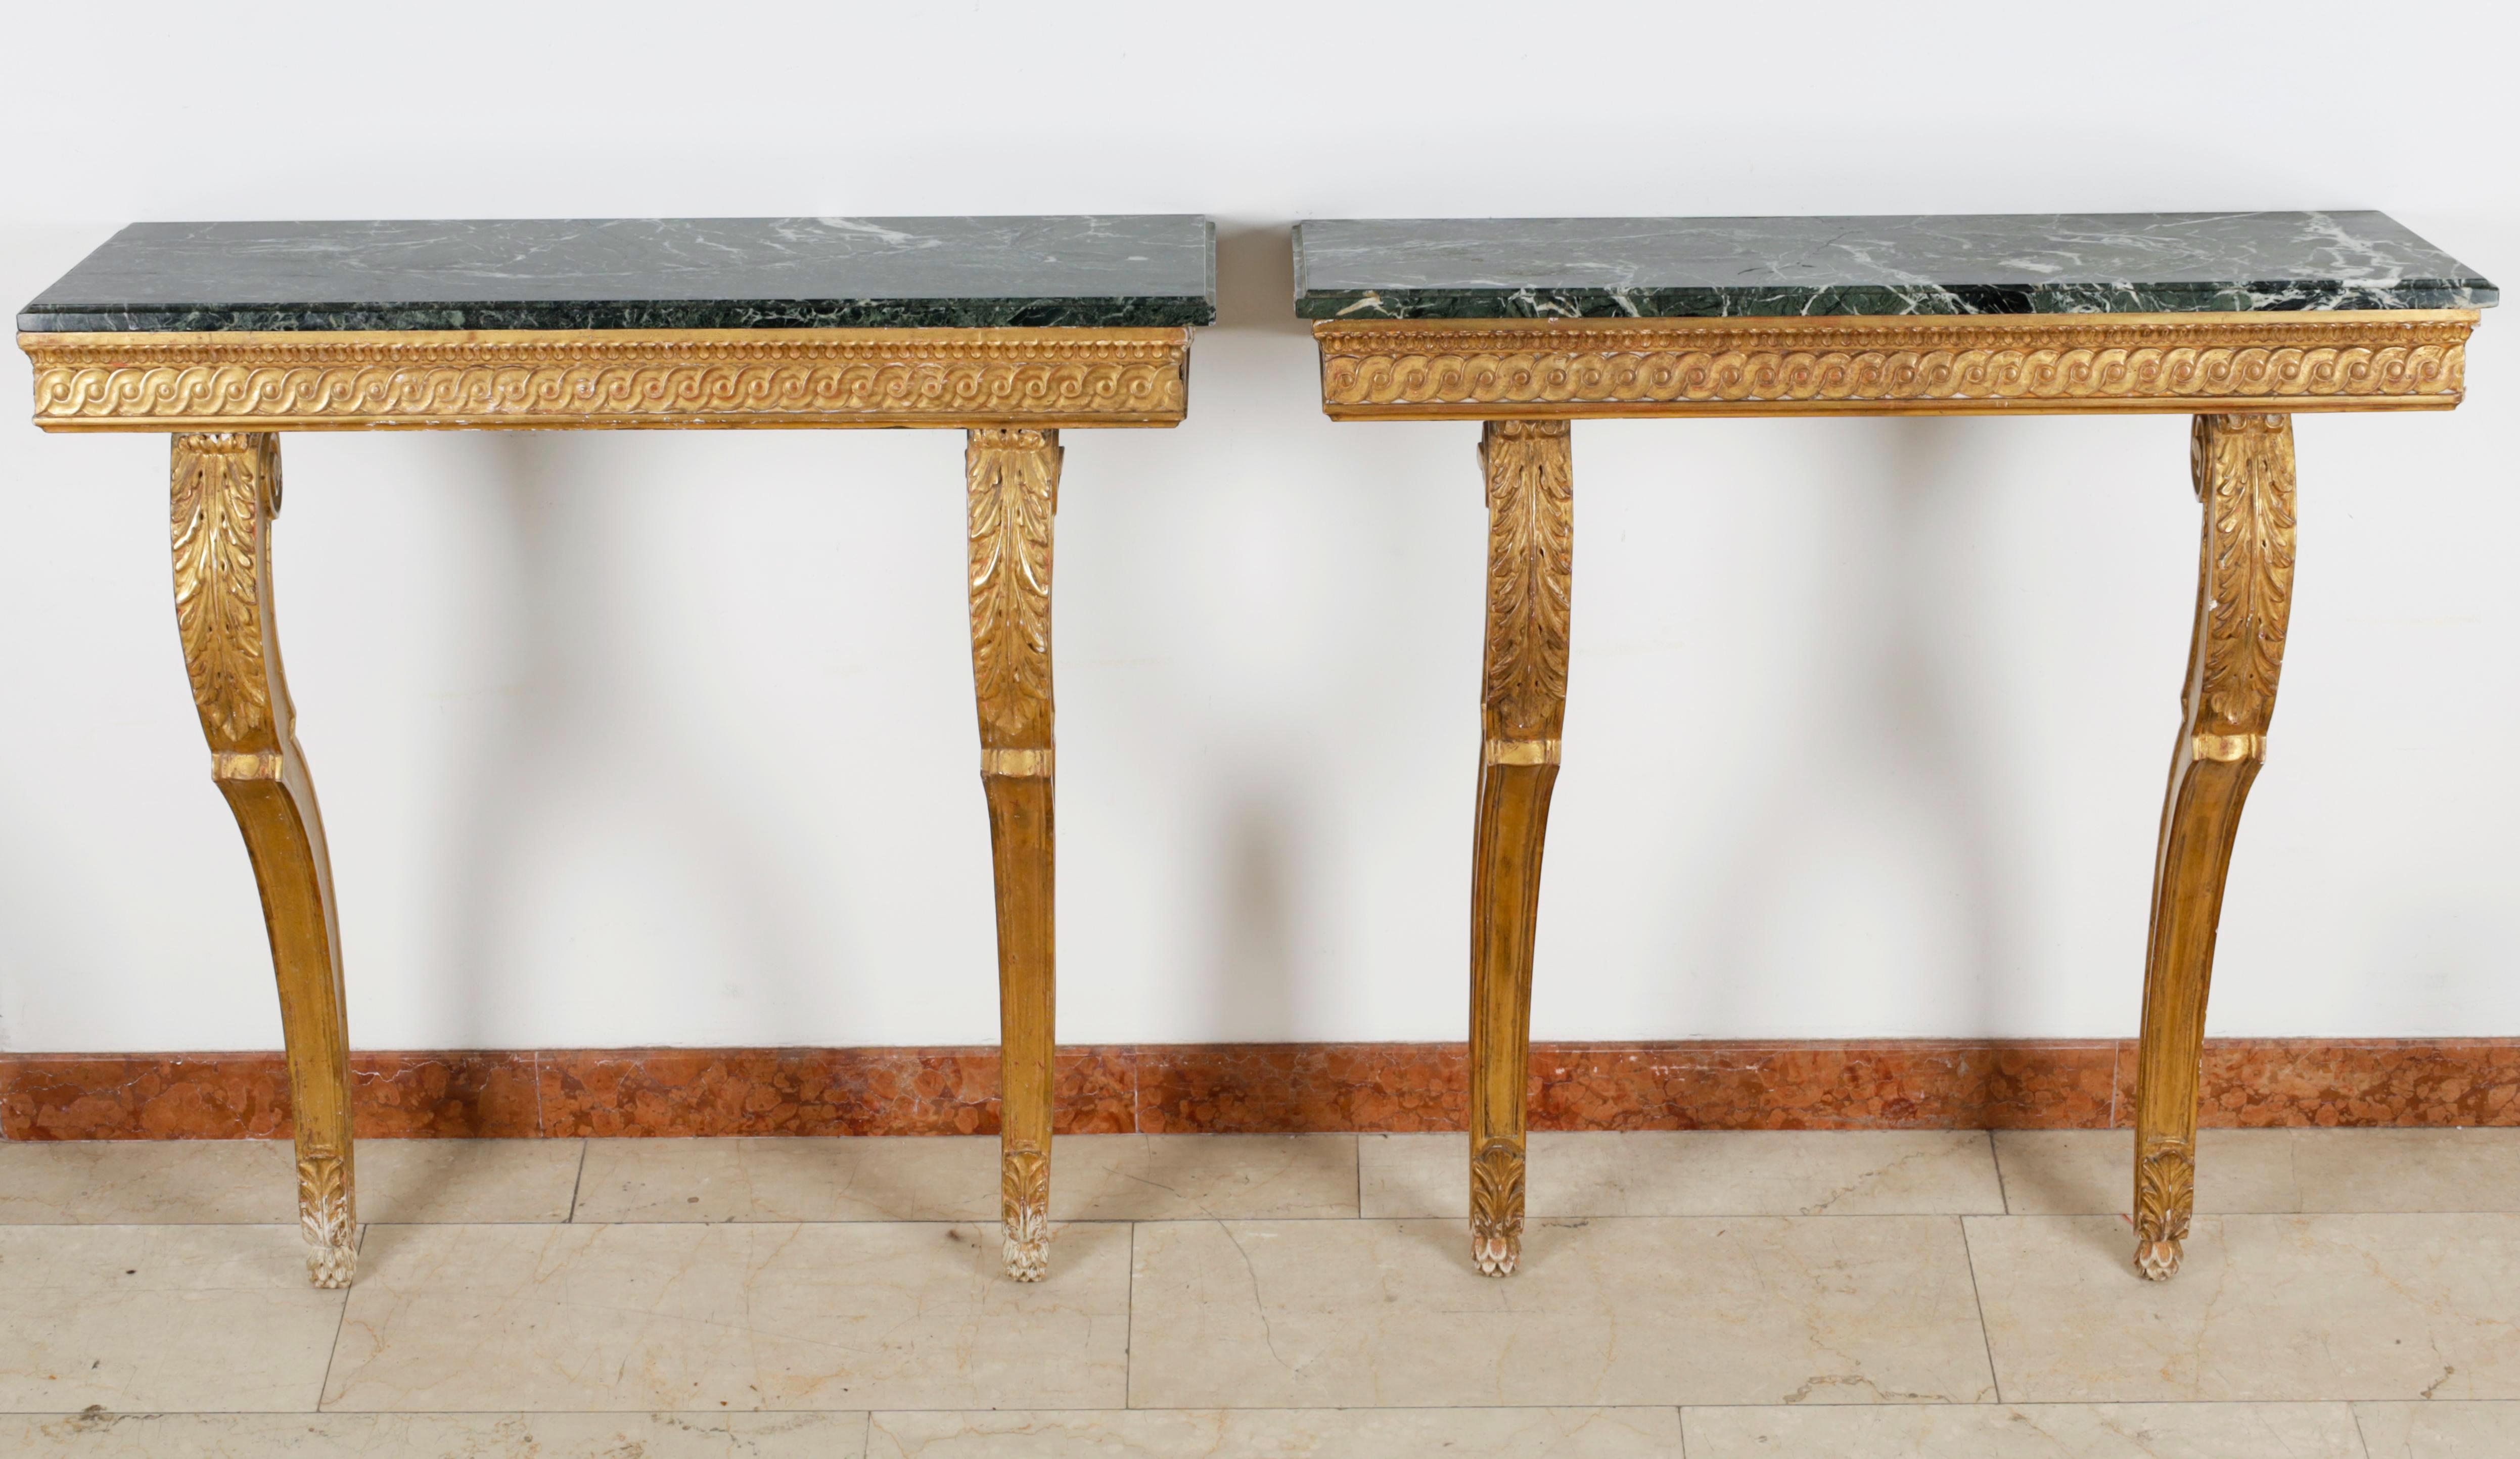 Bonjour,
Nous avons le plaisir de vous proposer cette élégante paire de meubles Louis XVI du milieu du 19ème siècle.  avec des consoles murales en marbre de Sienne. Les pièces reposent sur des pieds joliment formés et magnifiquement décorés de